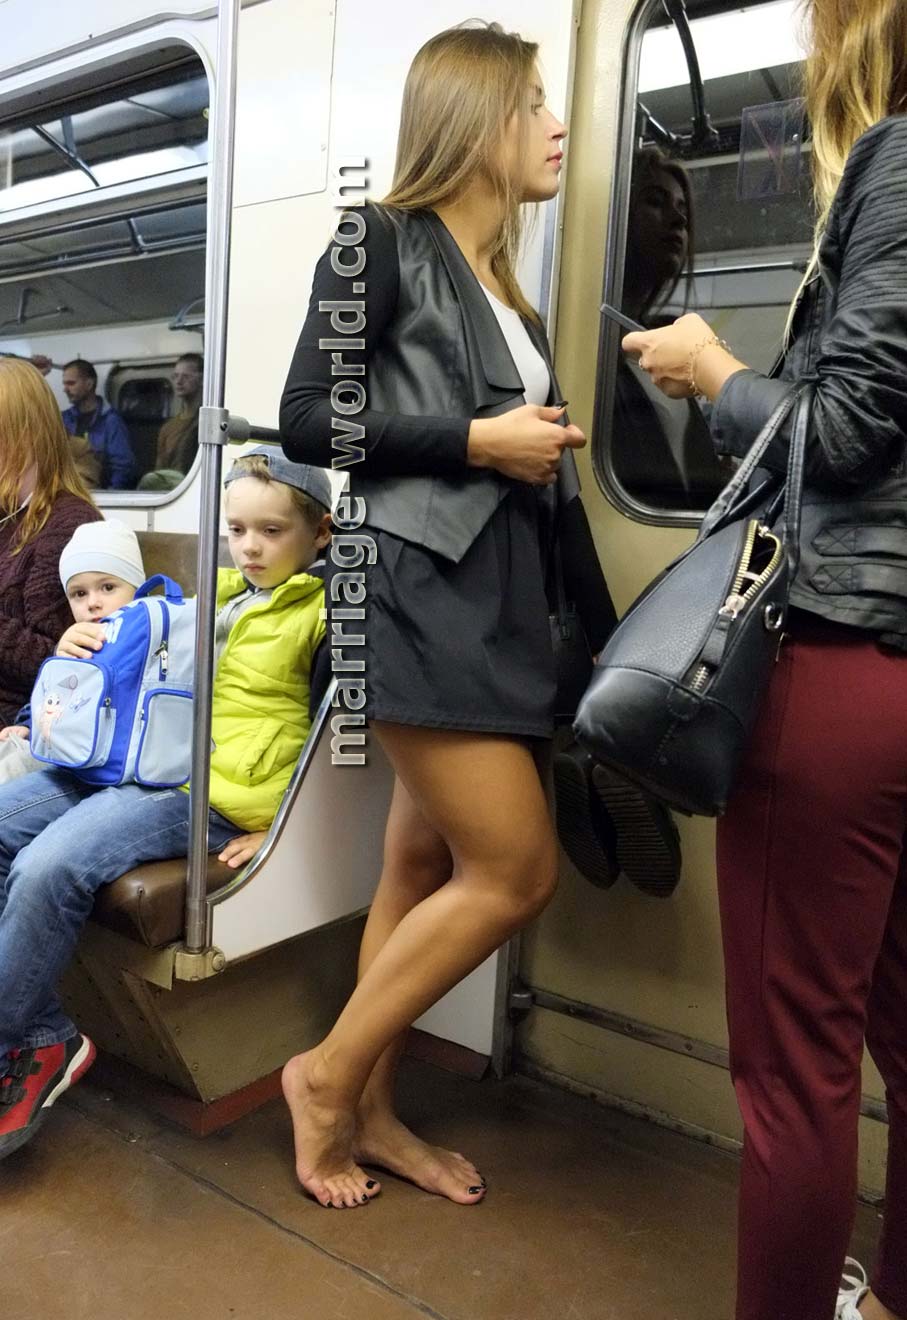 ragazza russa a piedi nudi nella metropolitana di mosca